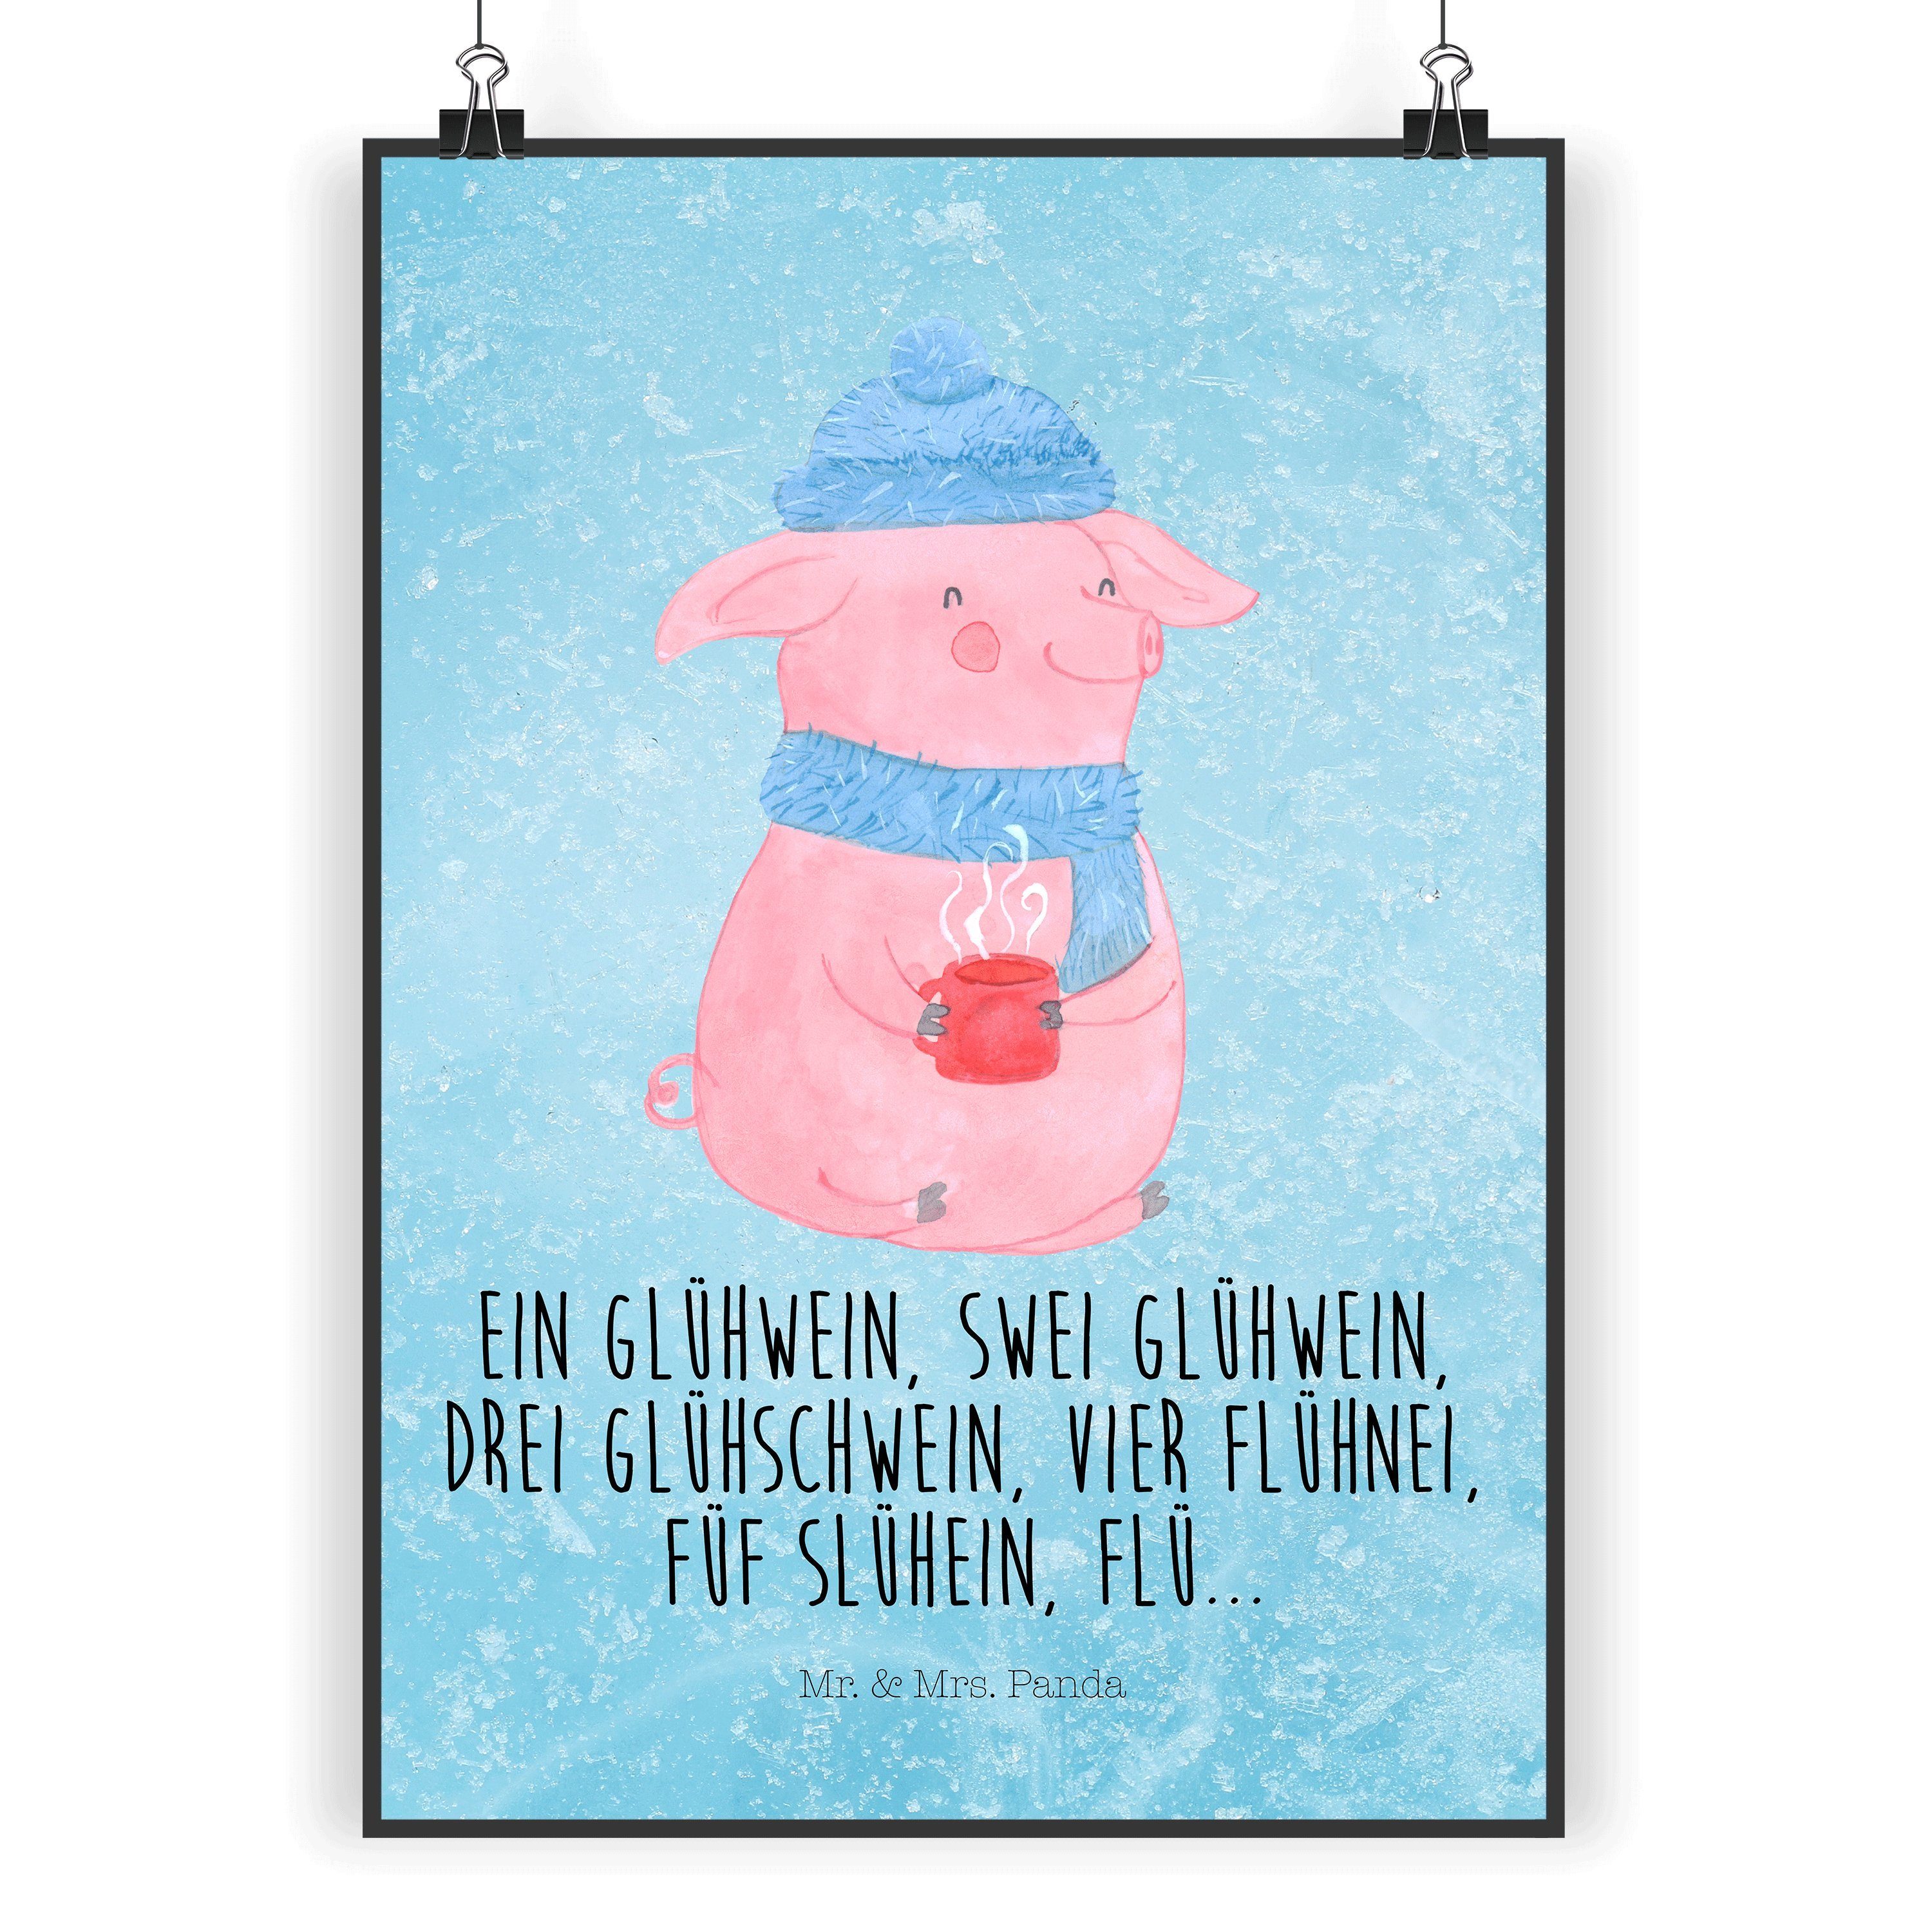 Mr. & Mrs. Panda Poster DIN A4 Schweinchen Glühwein - Eisblau - Geschenk, Poster, Advent, Rau, Lallelndes Glühschwein (1 St), Lebendige Farben